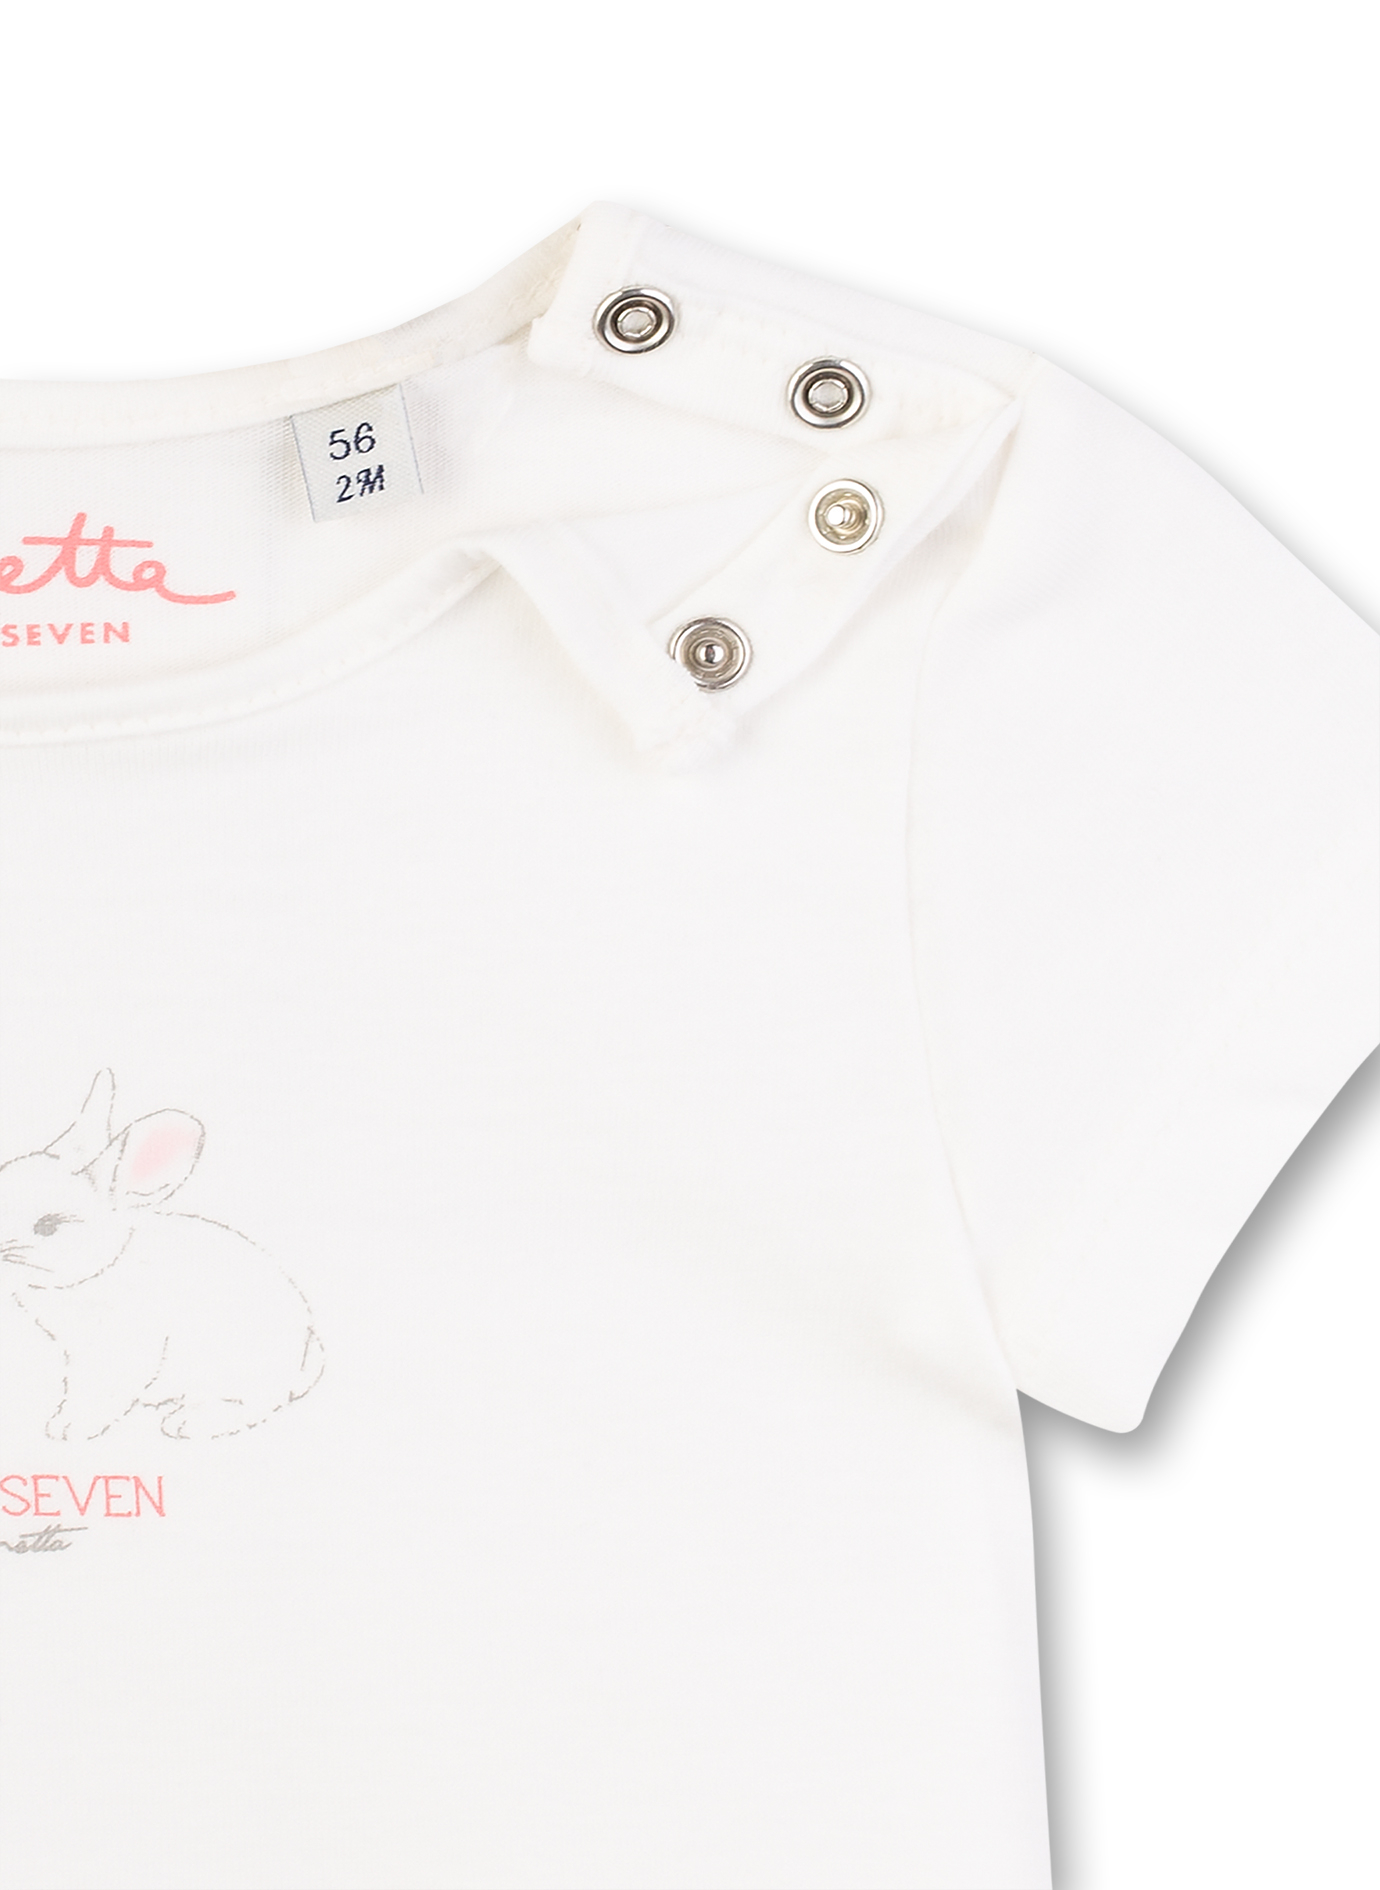 Mädchen T-Shirt Off White Lovely Bunny